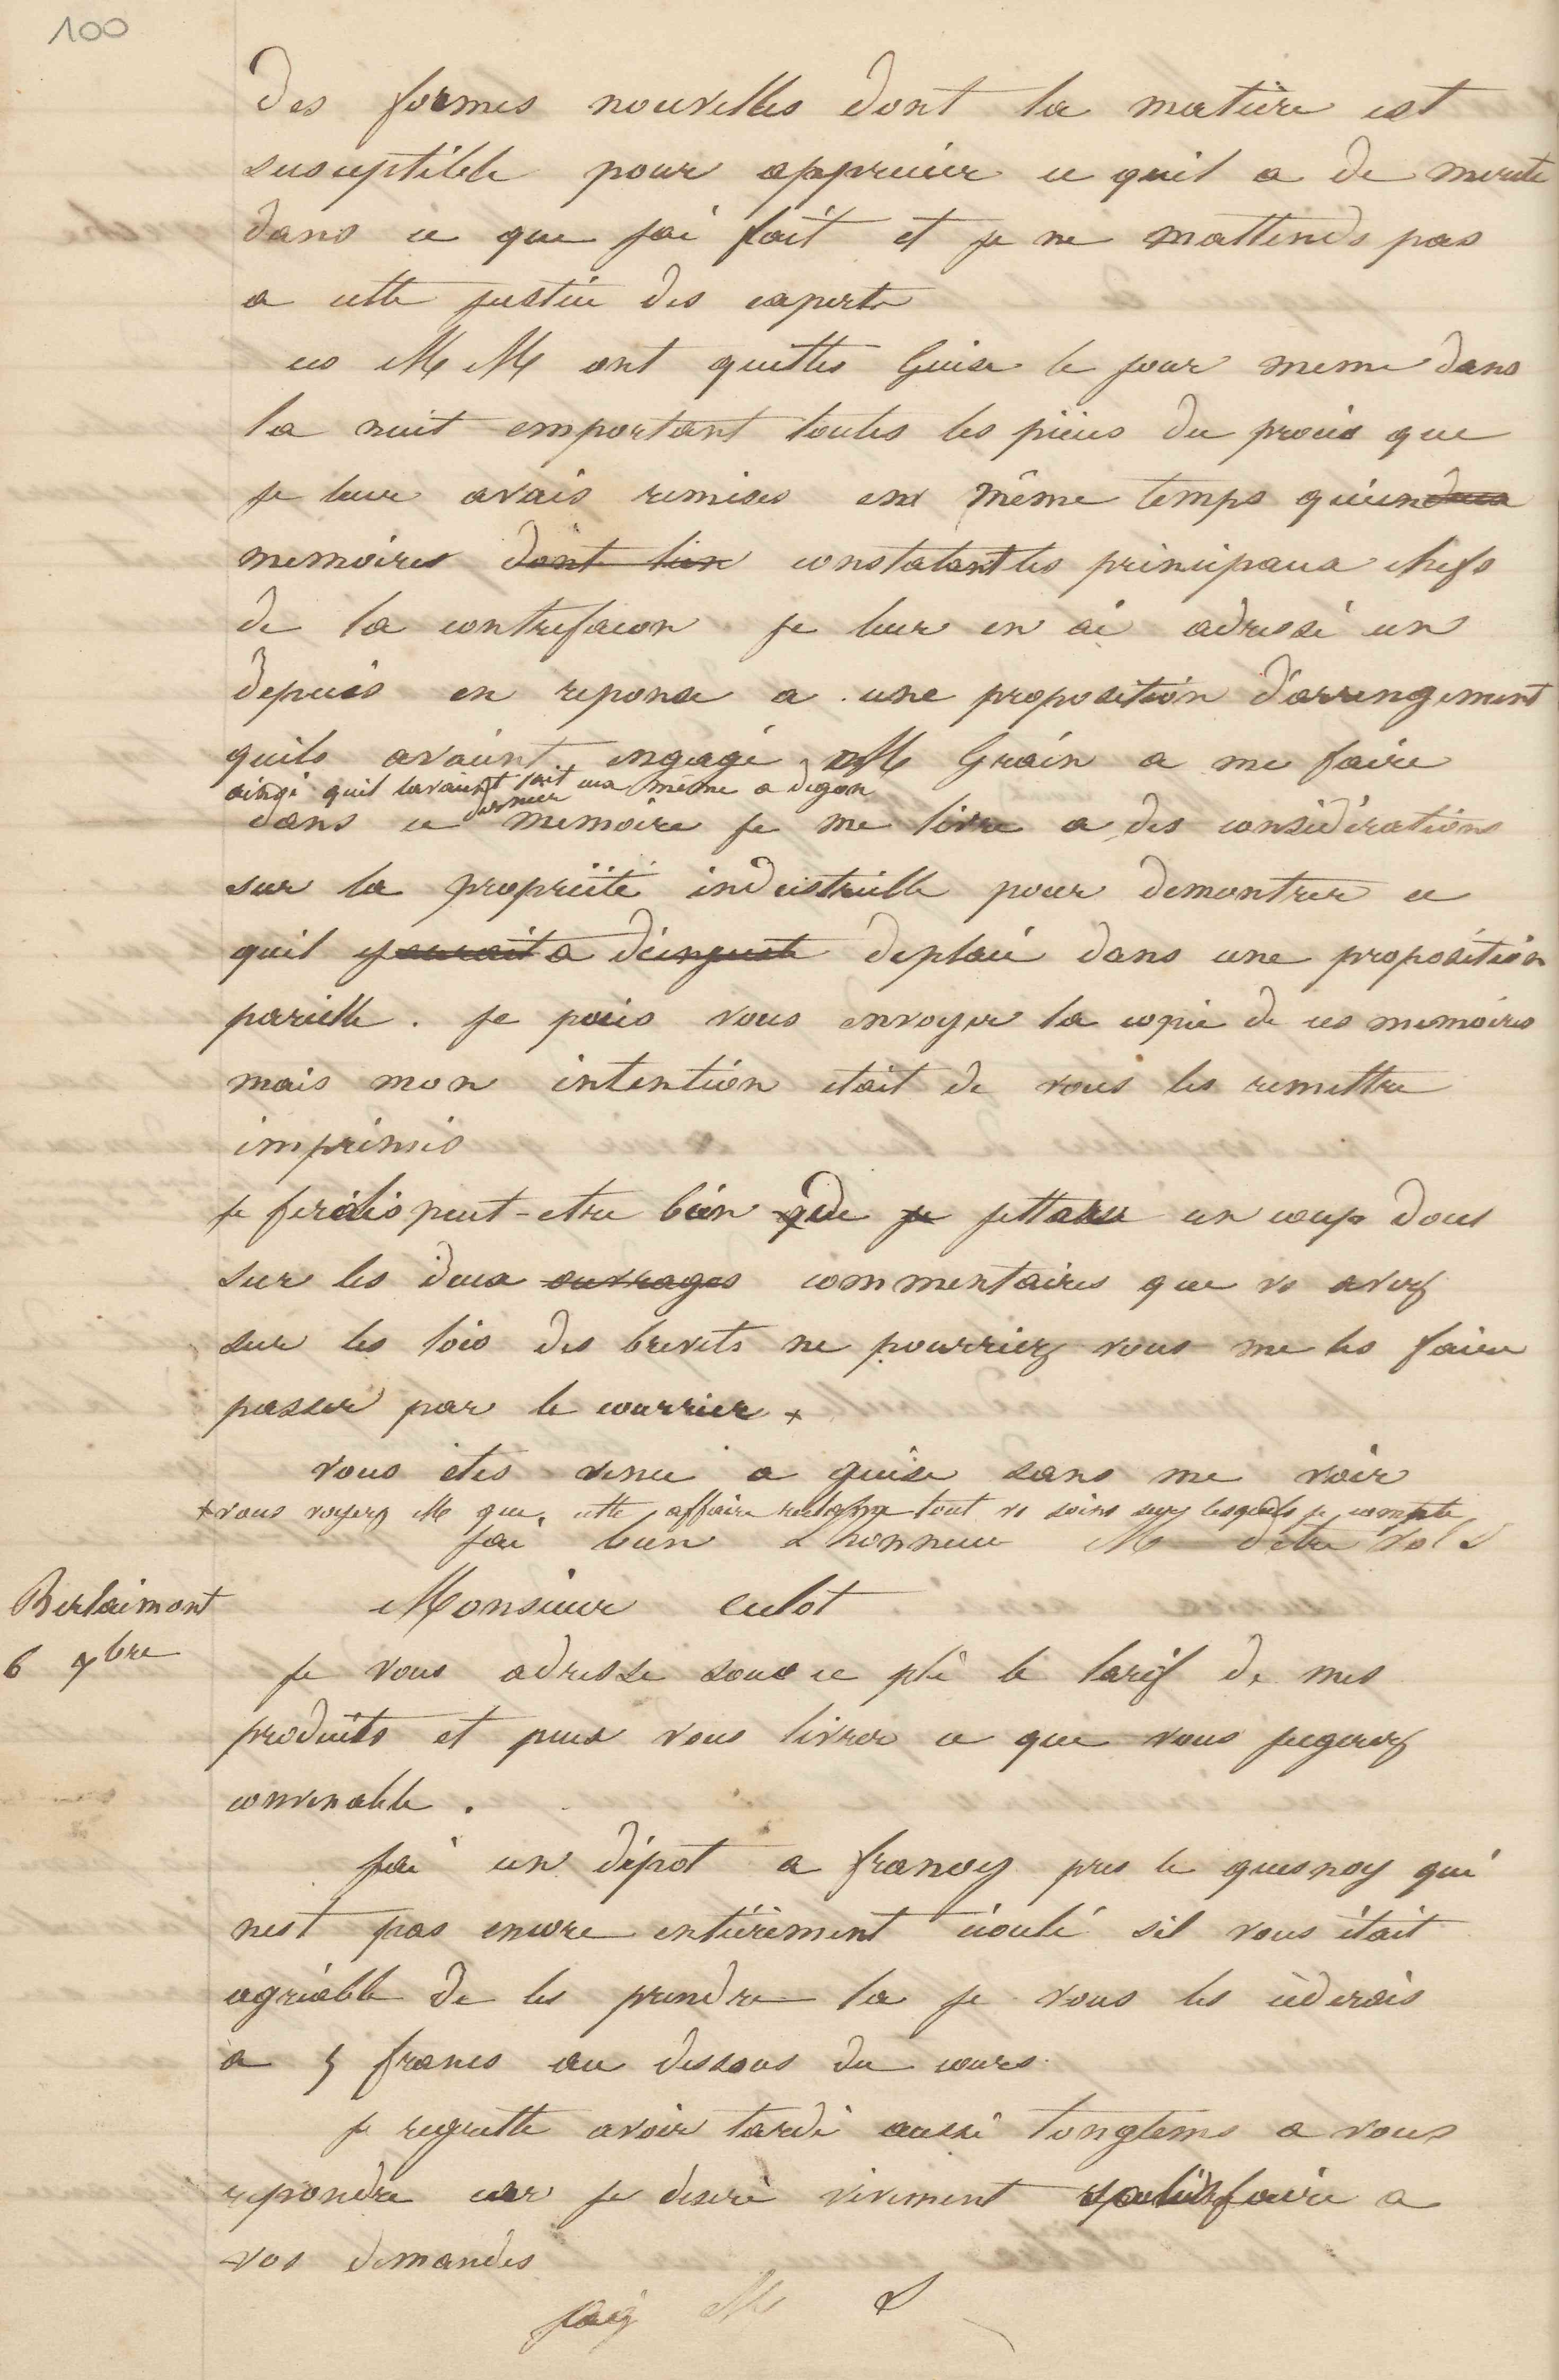 Jean-Baptiste André Godin à monsieur Culot, 6 septembre 1847